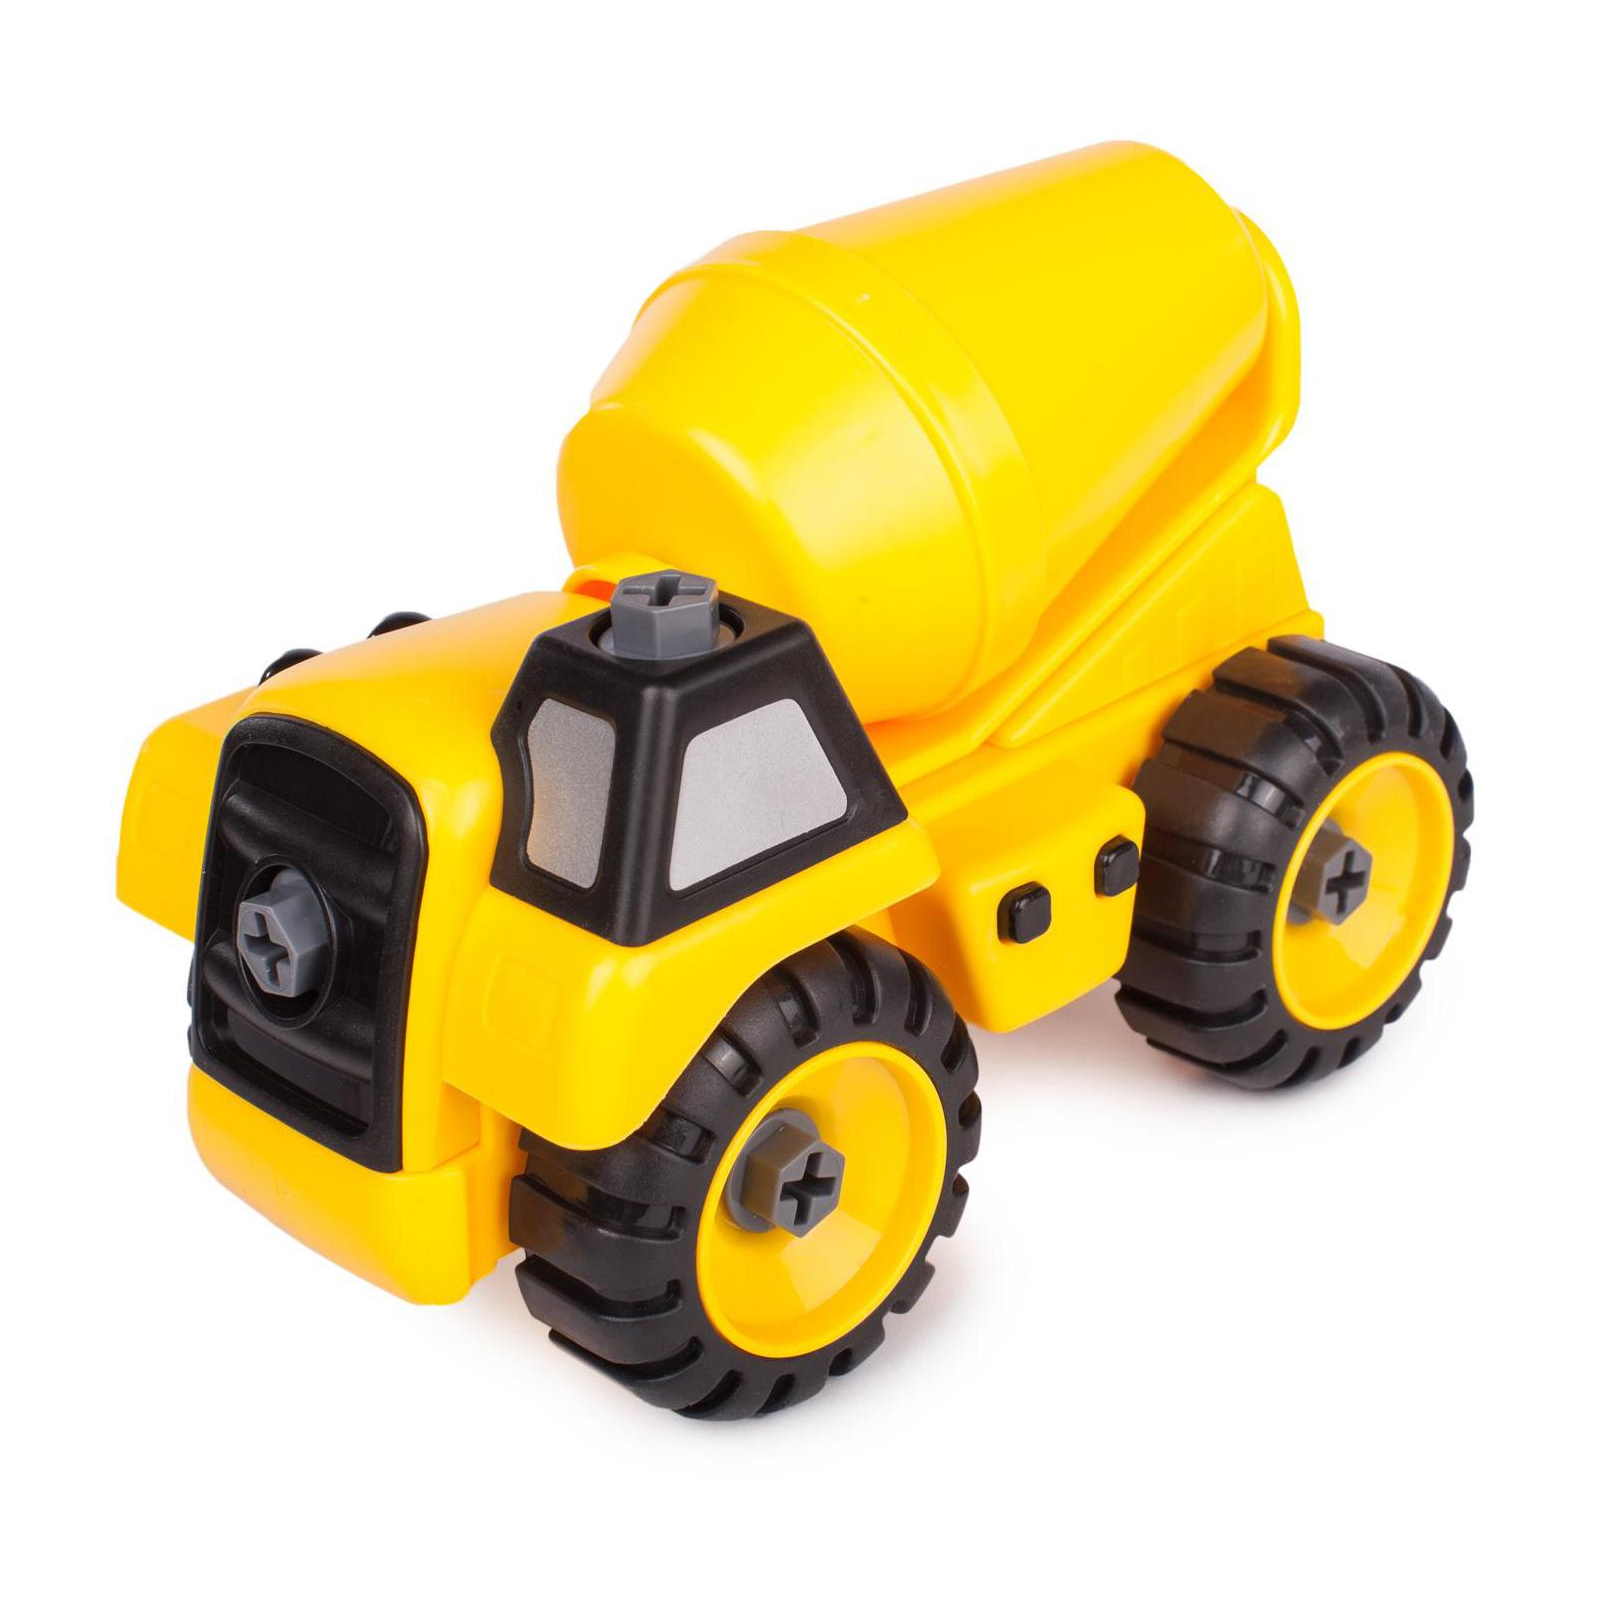 Машина Kaile Toys Набор бетоновоз/самосвал, разборная модель с отверткой (KL716-1) изображение 4